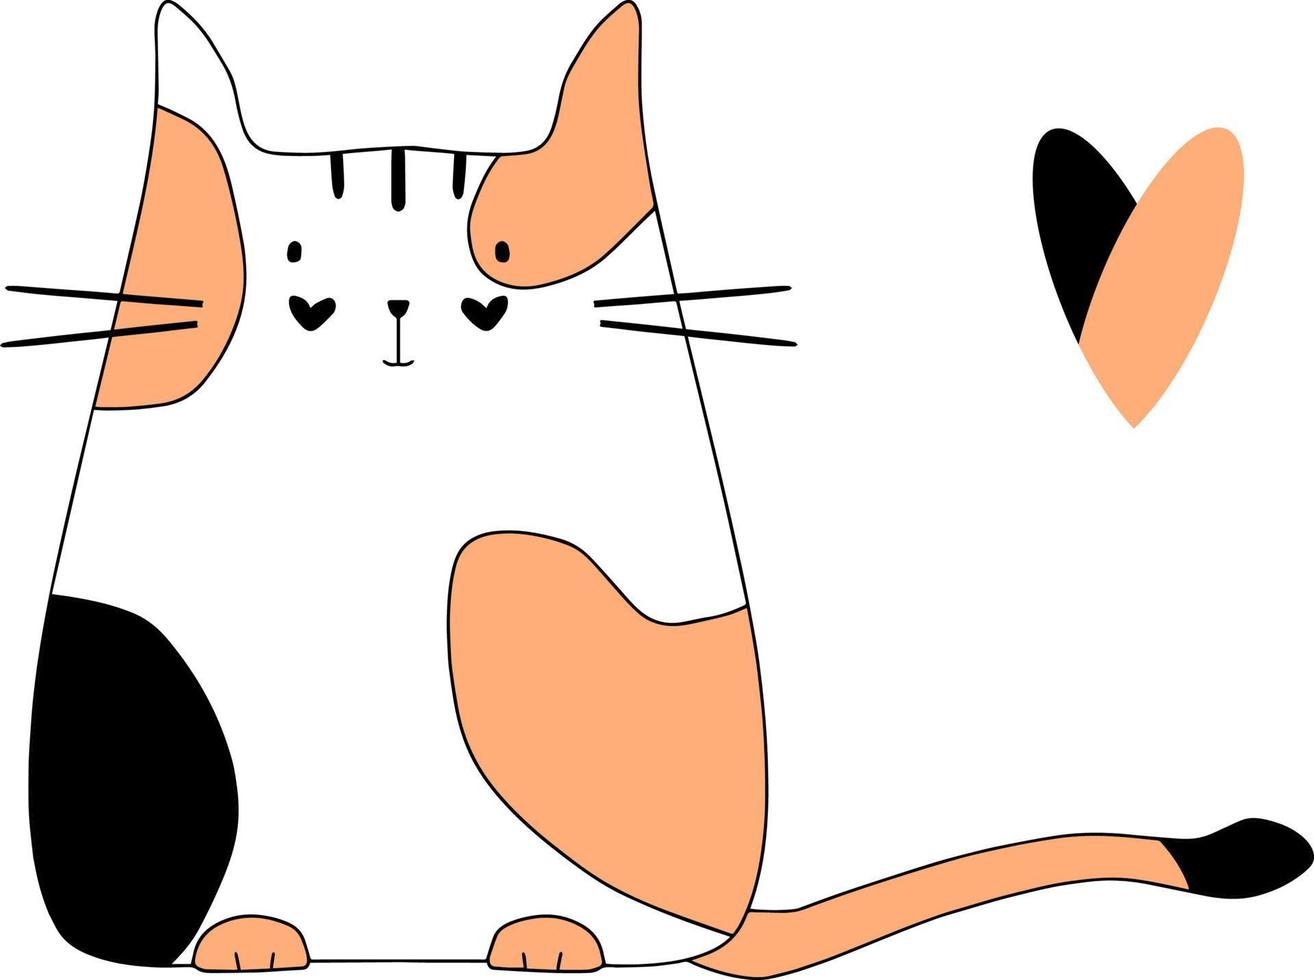 gato blanco con manchas rojas y negras ilustración plana dibujo a mano aislado vector simple boceto